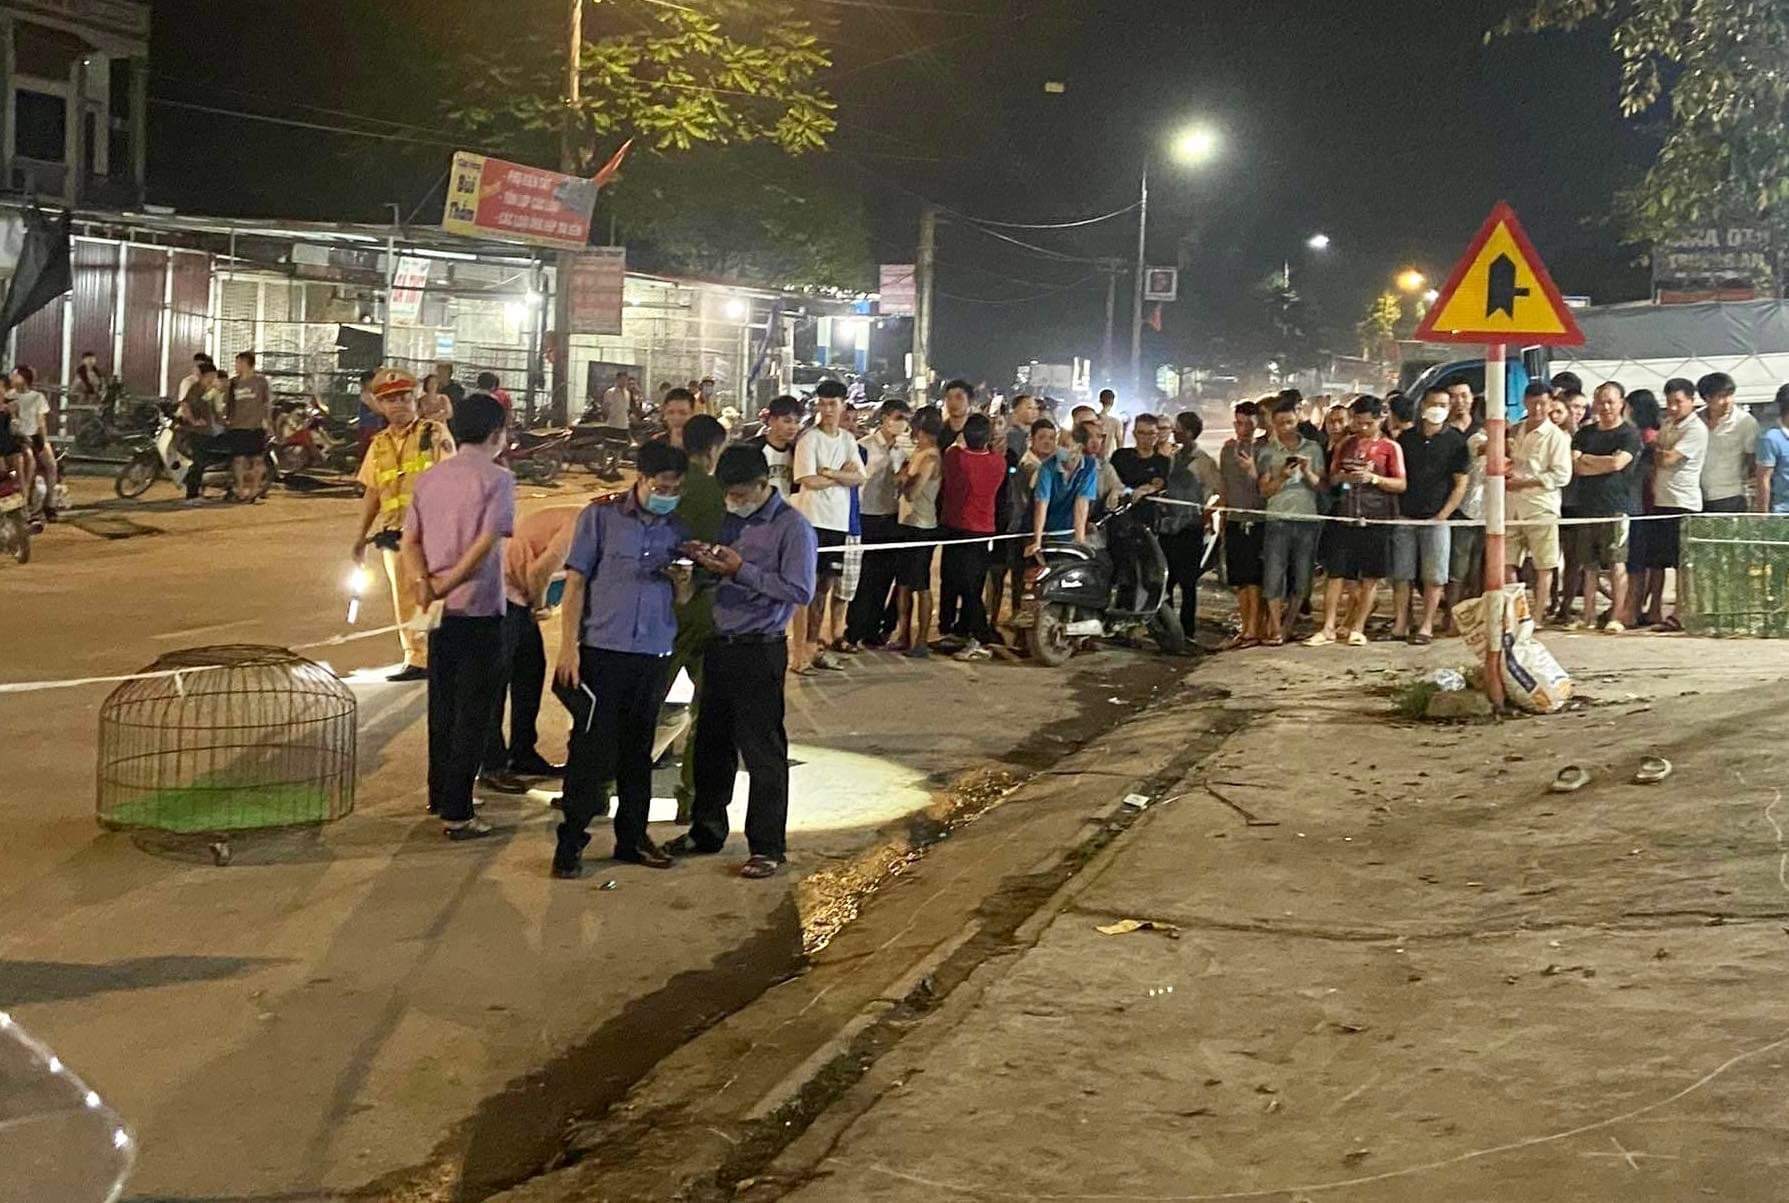 Không nên bỏ lỡ - Bắc Giang: Nổ súng bắn 1 người nhập viện, nghi phạm bỏ trốn